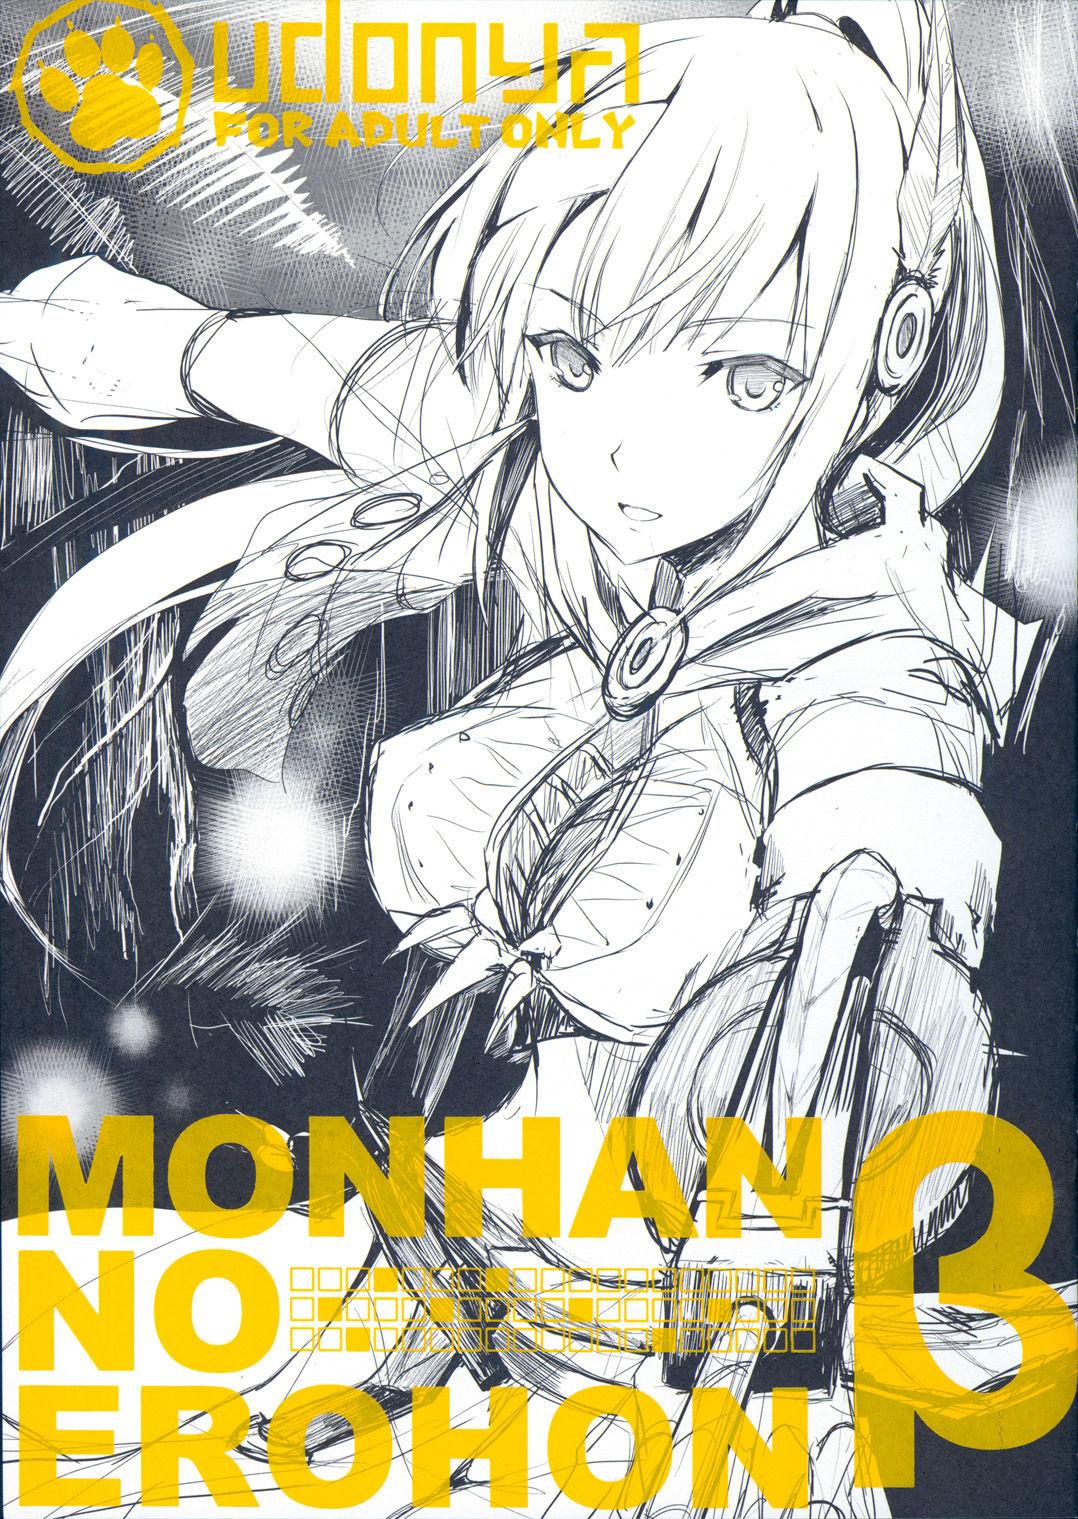 Monhan no Erohon β 2